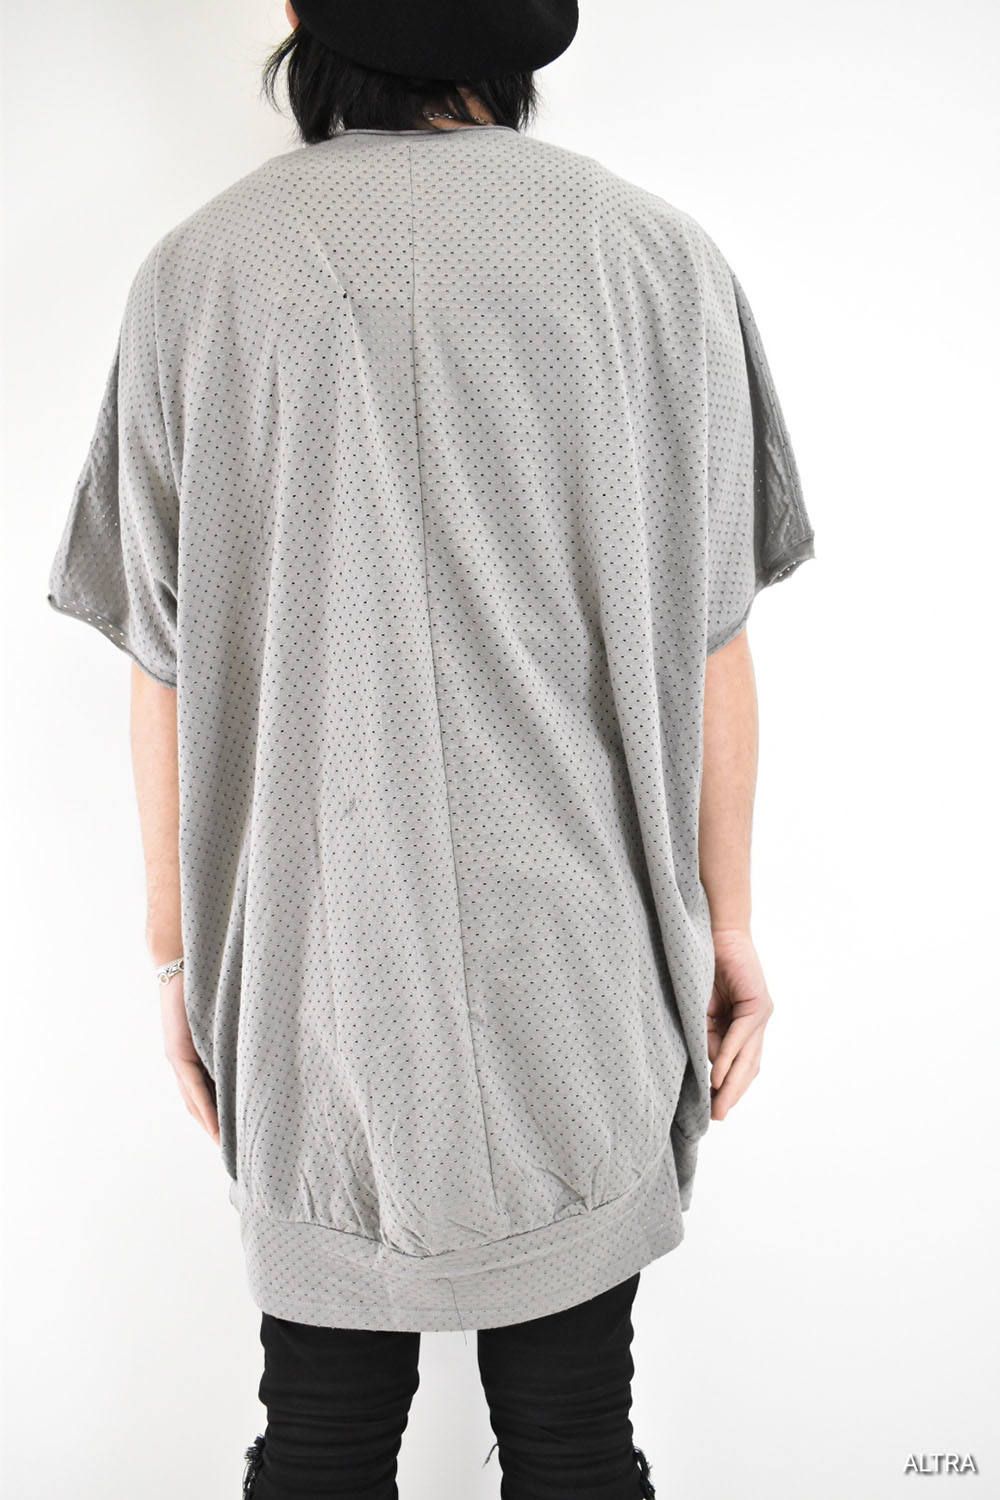 天竺ジャガードBig T Shirt "Grey"